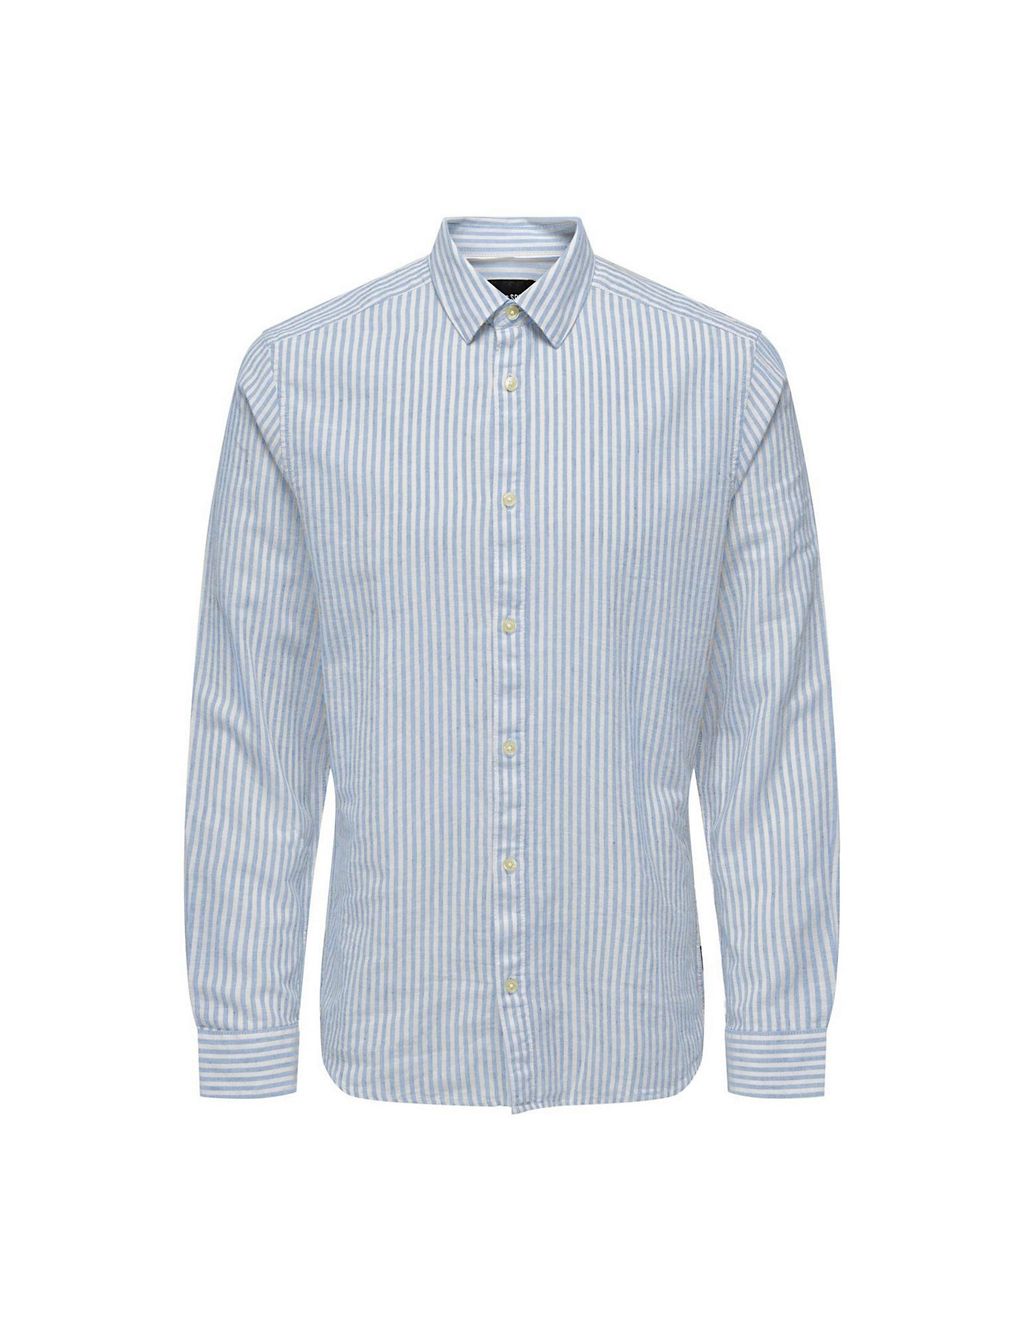 Cotton Linen Blend Striped Shirt 1 of 1